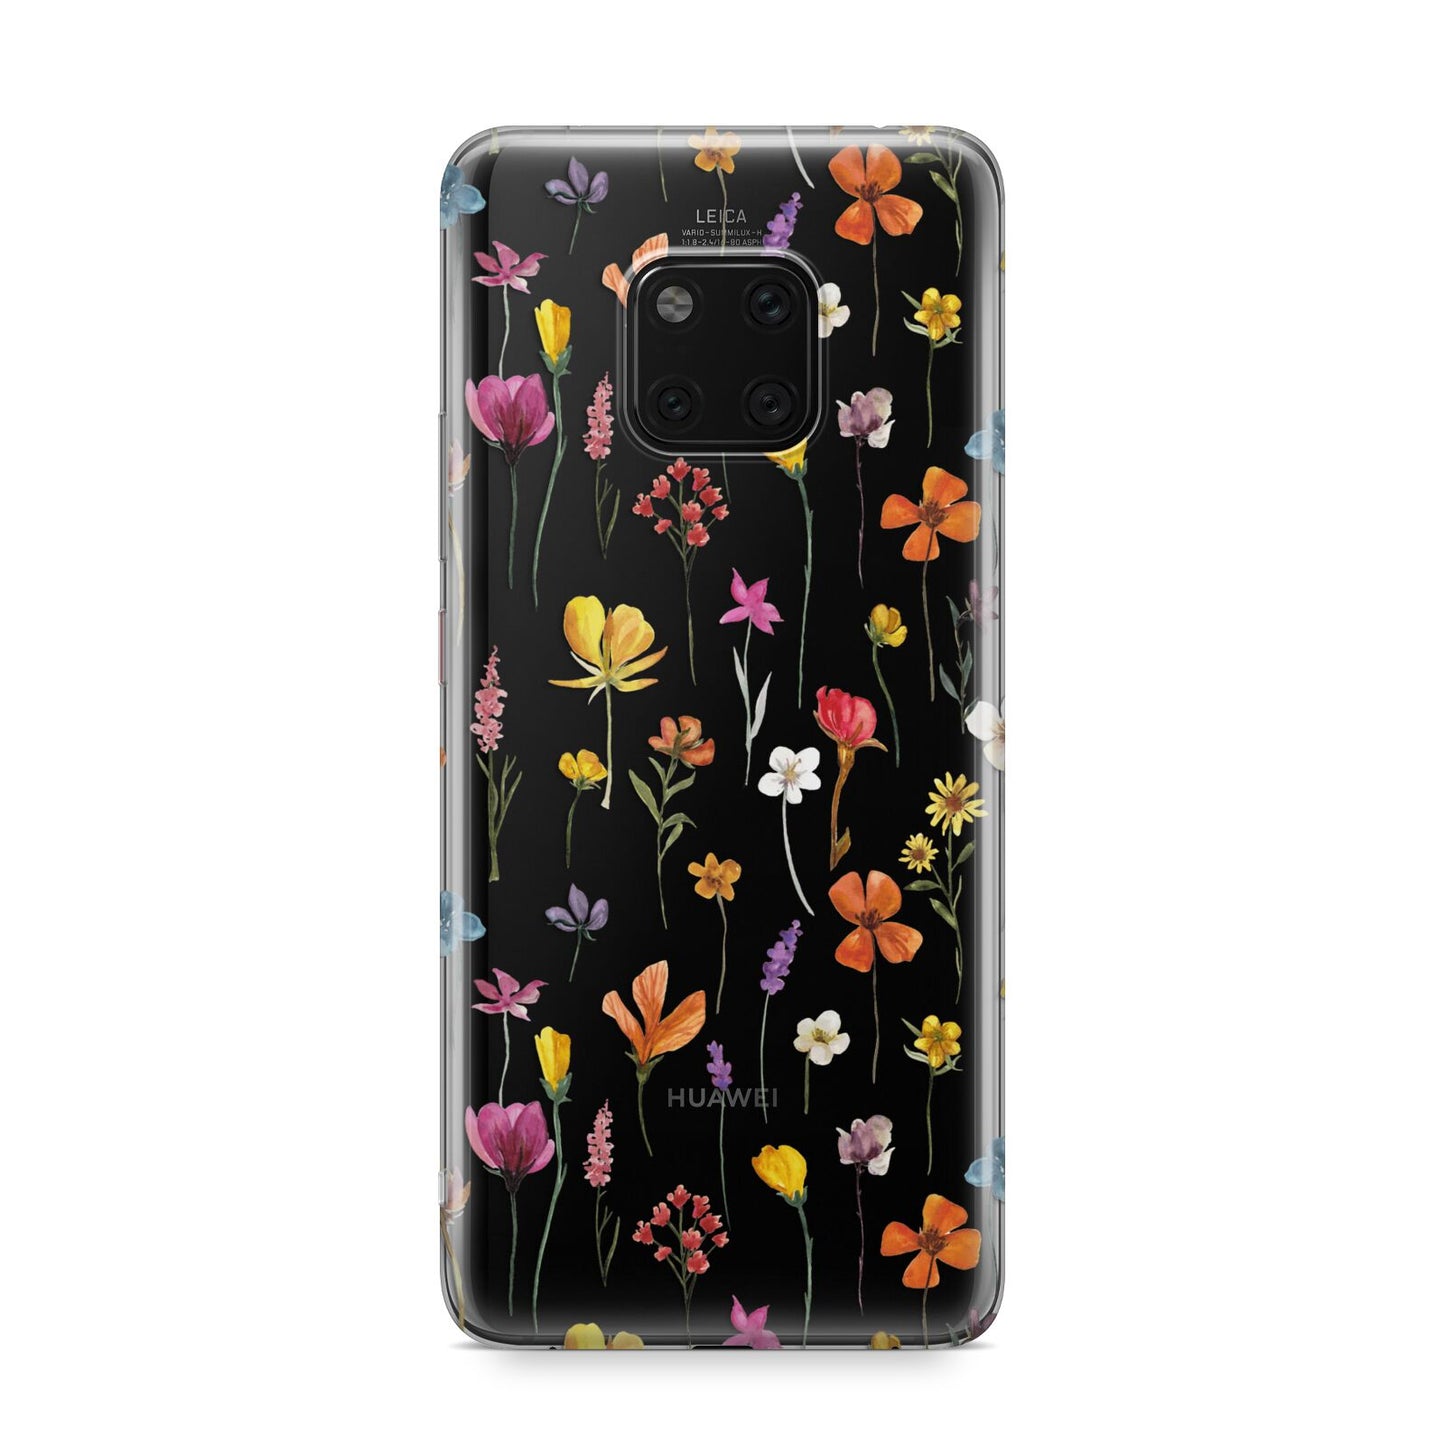 Botanical Floral Huawei Mate 20 Pro Phone Case